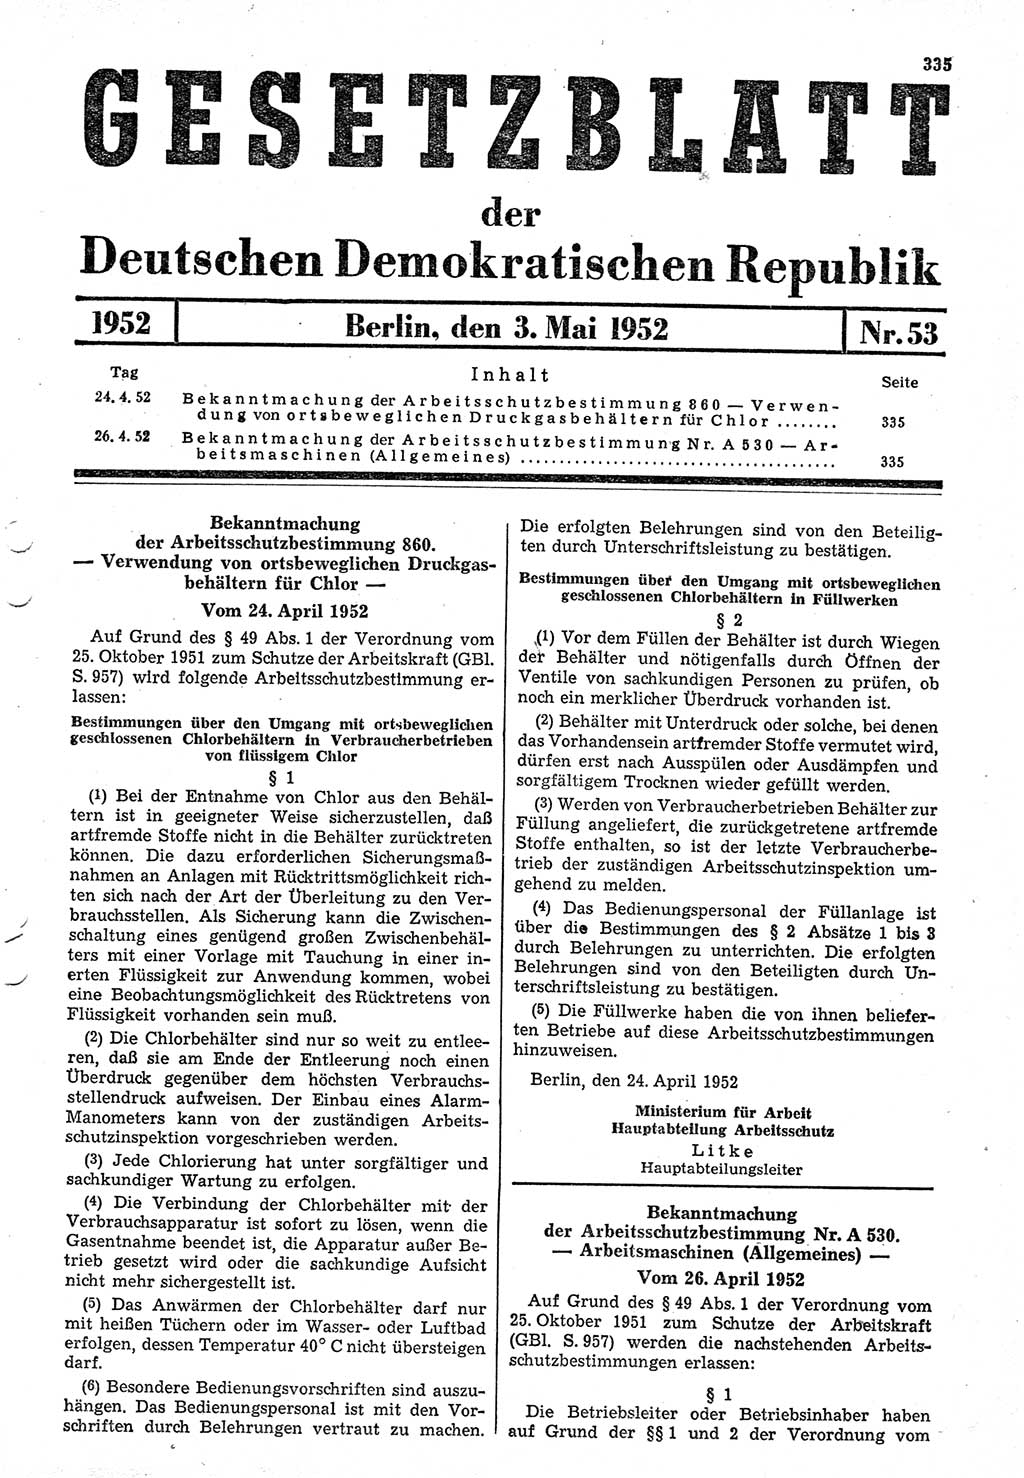 Gesetzblatt (GBl.) der Deutschen Demokratischen Republik (DDR) 1952, Seite 335 (GBl. DDR 1952, S. 335)